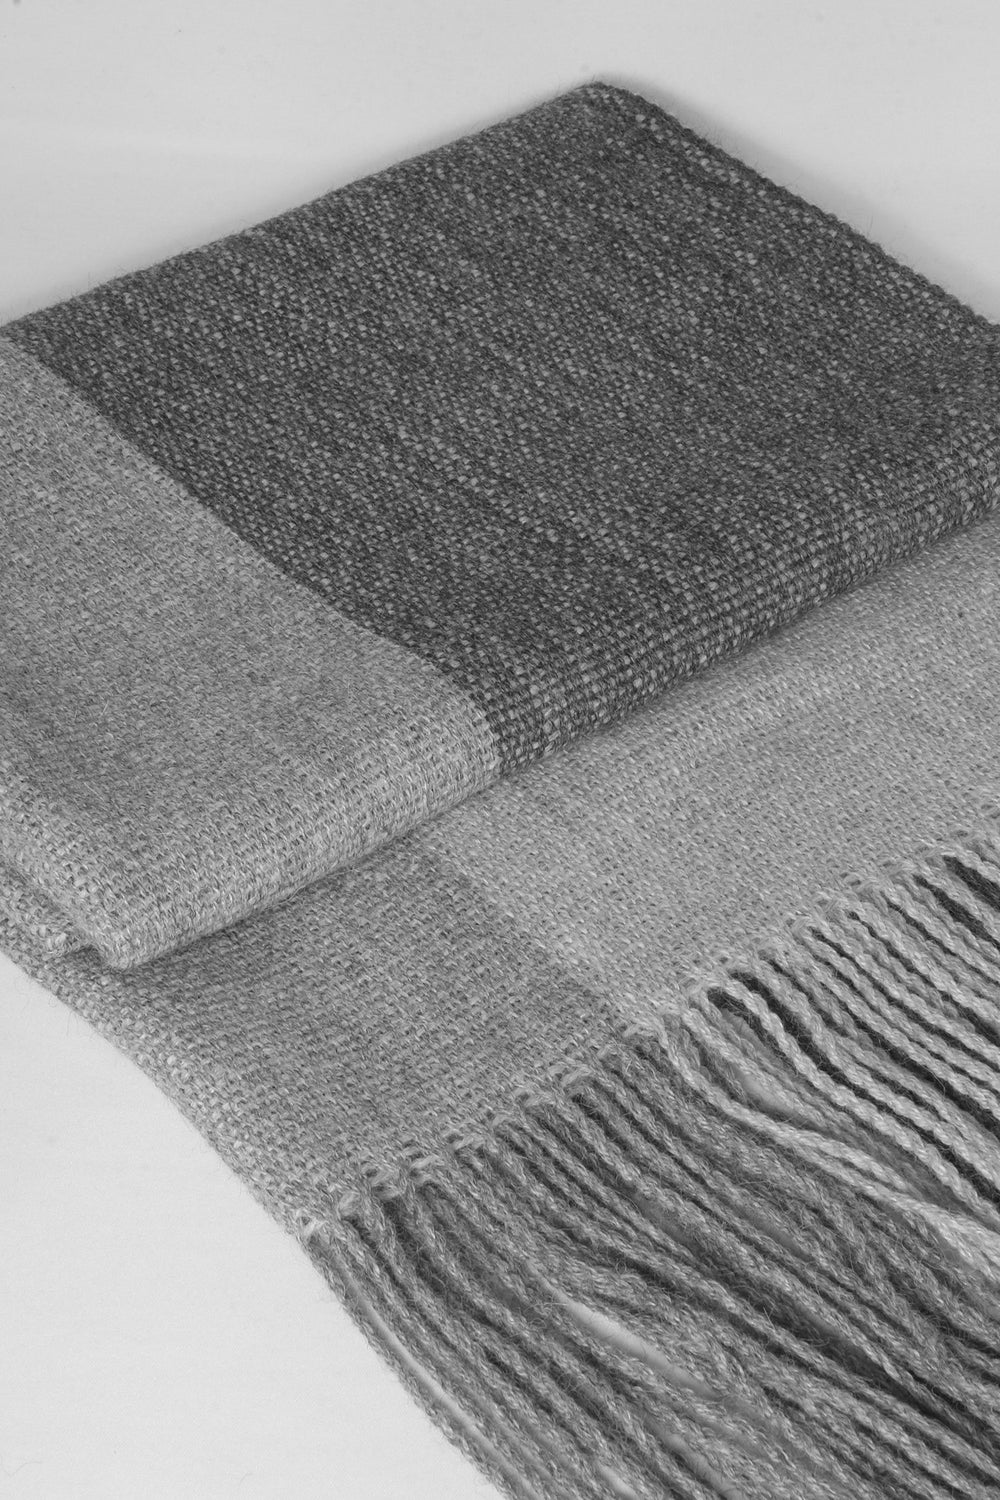 Gestreifter Schal aus Alpaka Wolle in drei Grautönen, gefaltet